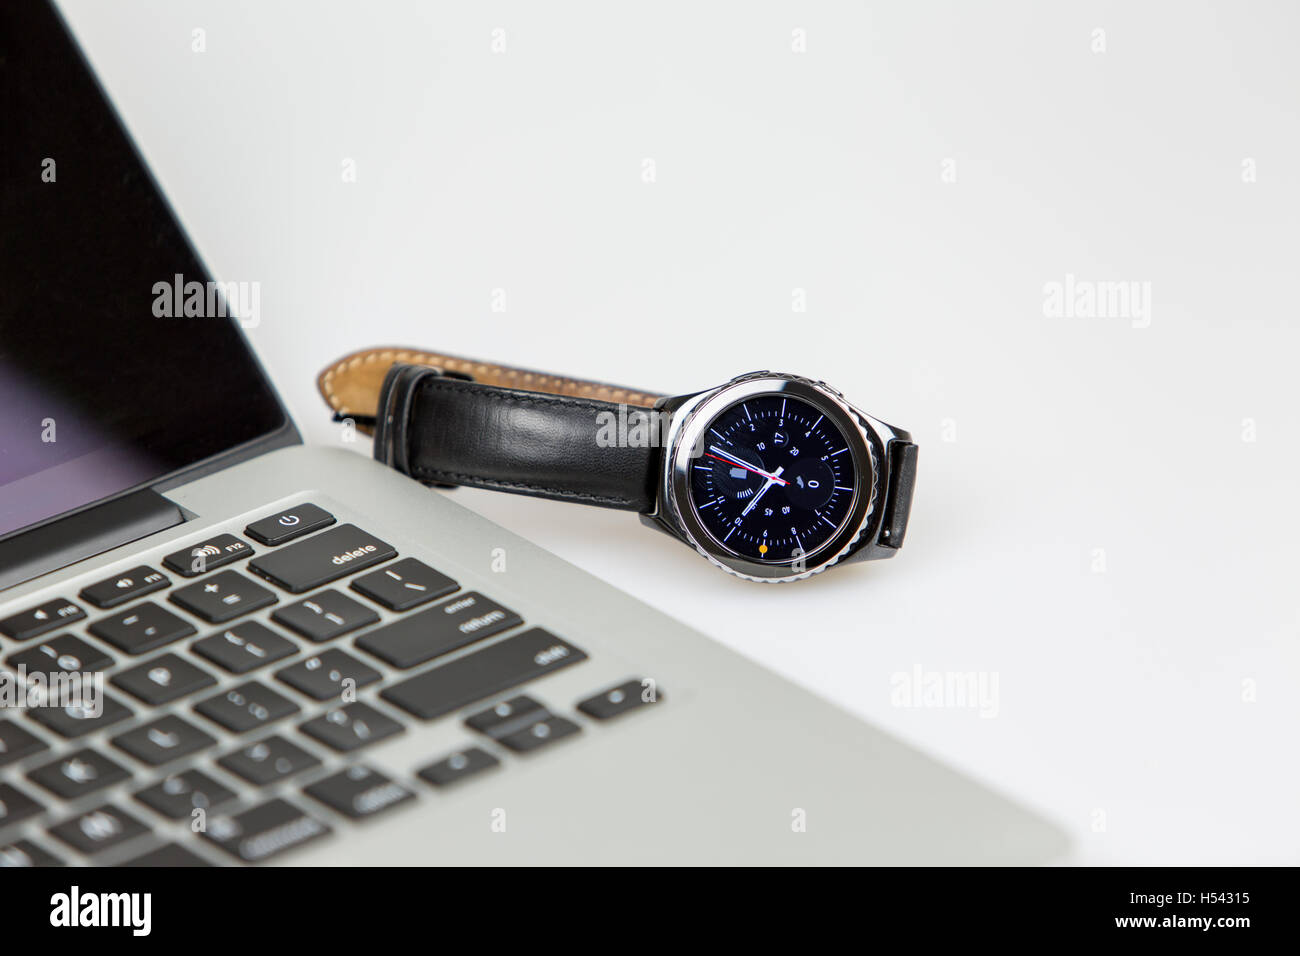 Lapto pwith smart watch couché sur le côté gauche de l'ordinateur portable. Réveil sur l'écran et la batterie entièrement chargée. 4 heures sur le wa Banque D'Images